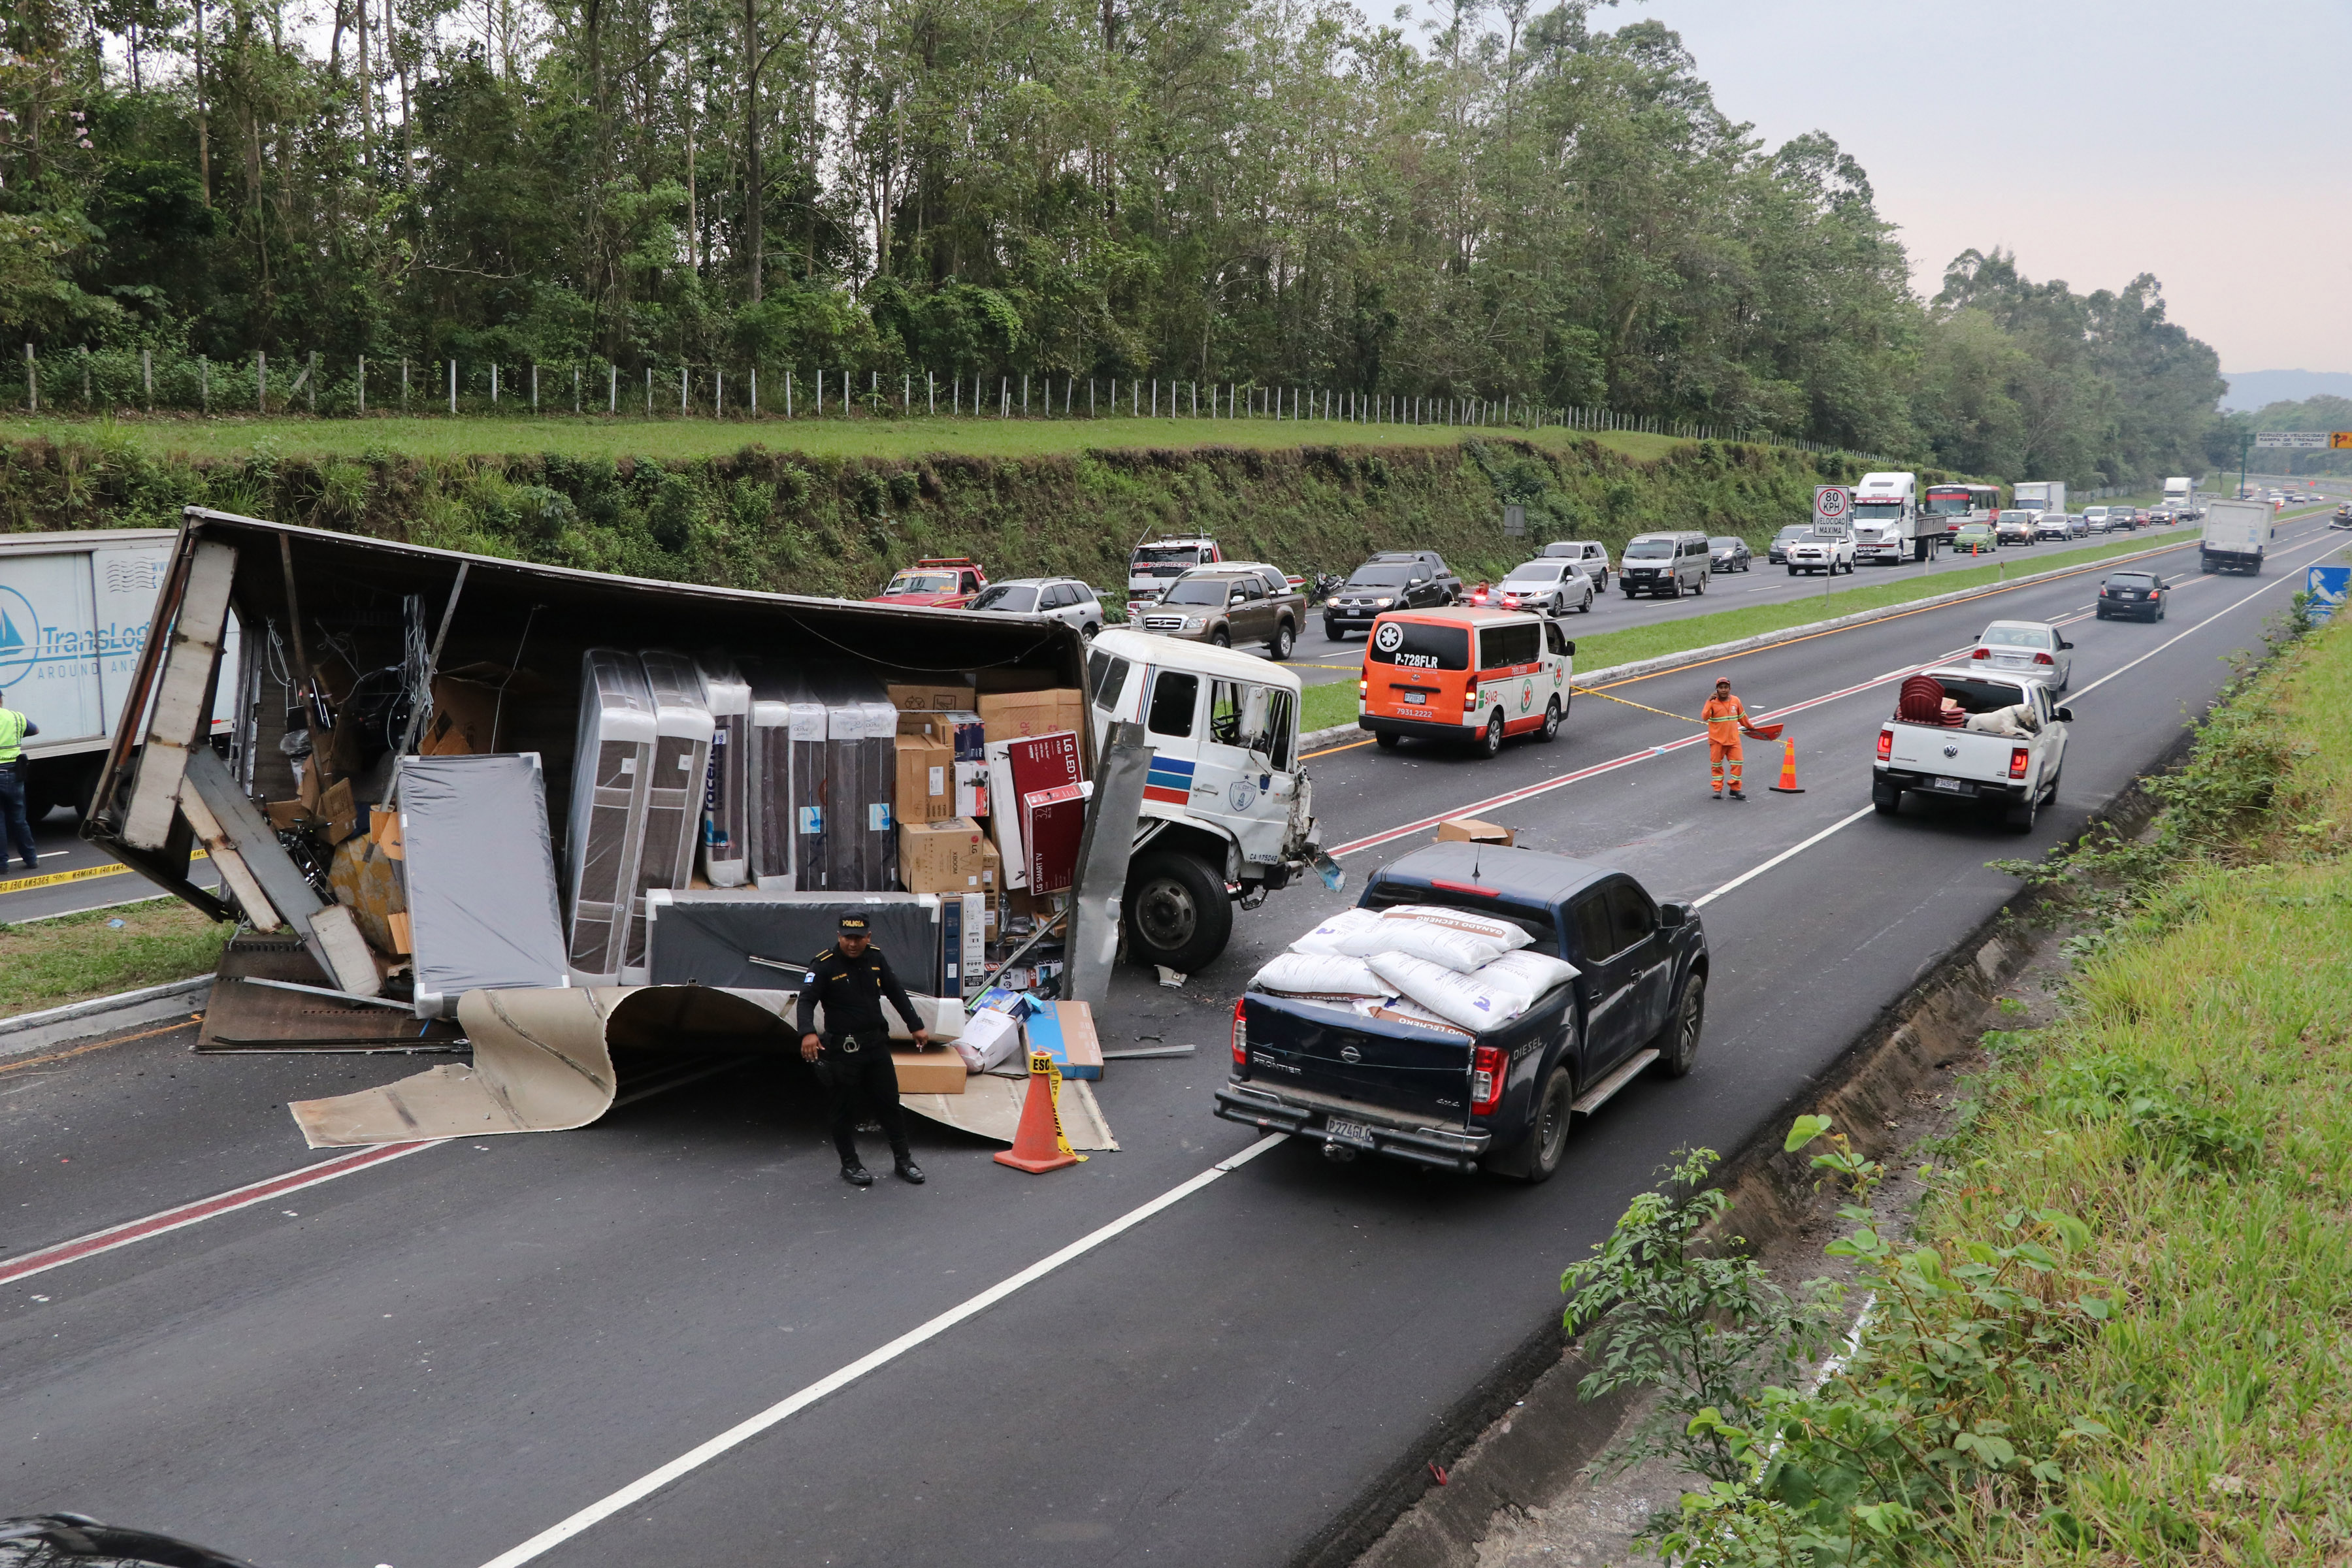 Lugar del accidente donde murió un hombre y una mujer en el kilómetro 50 de la autopista Palín-Escuintla. (Foto Prensa Libre: Enrique Paredes).

